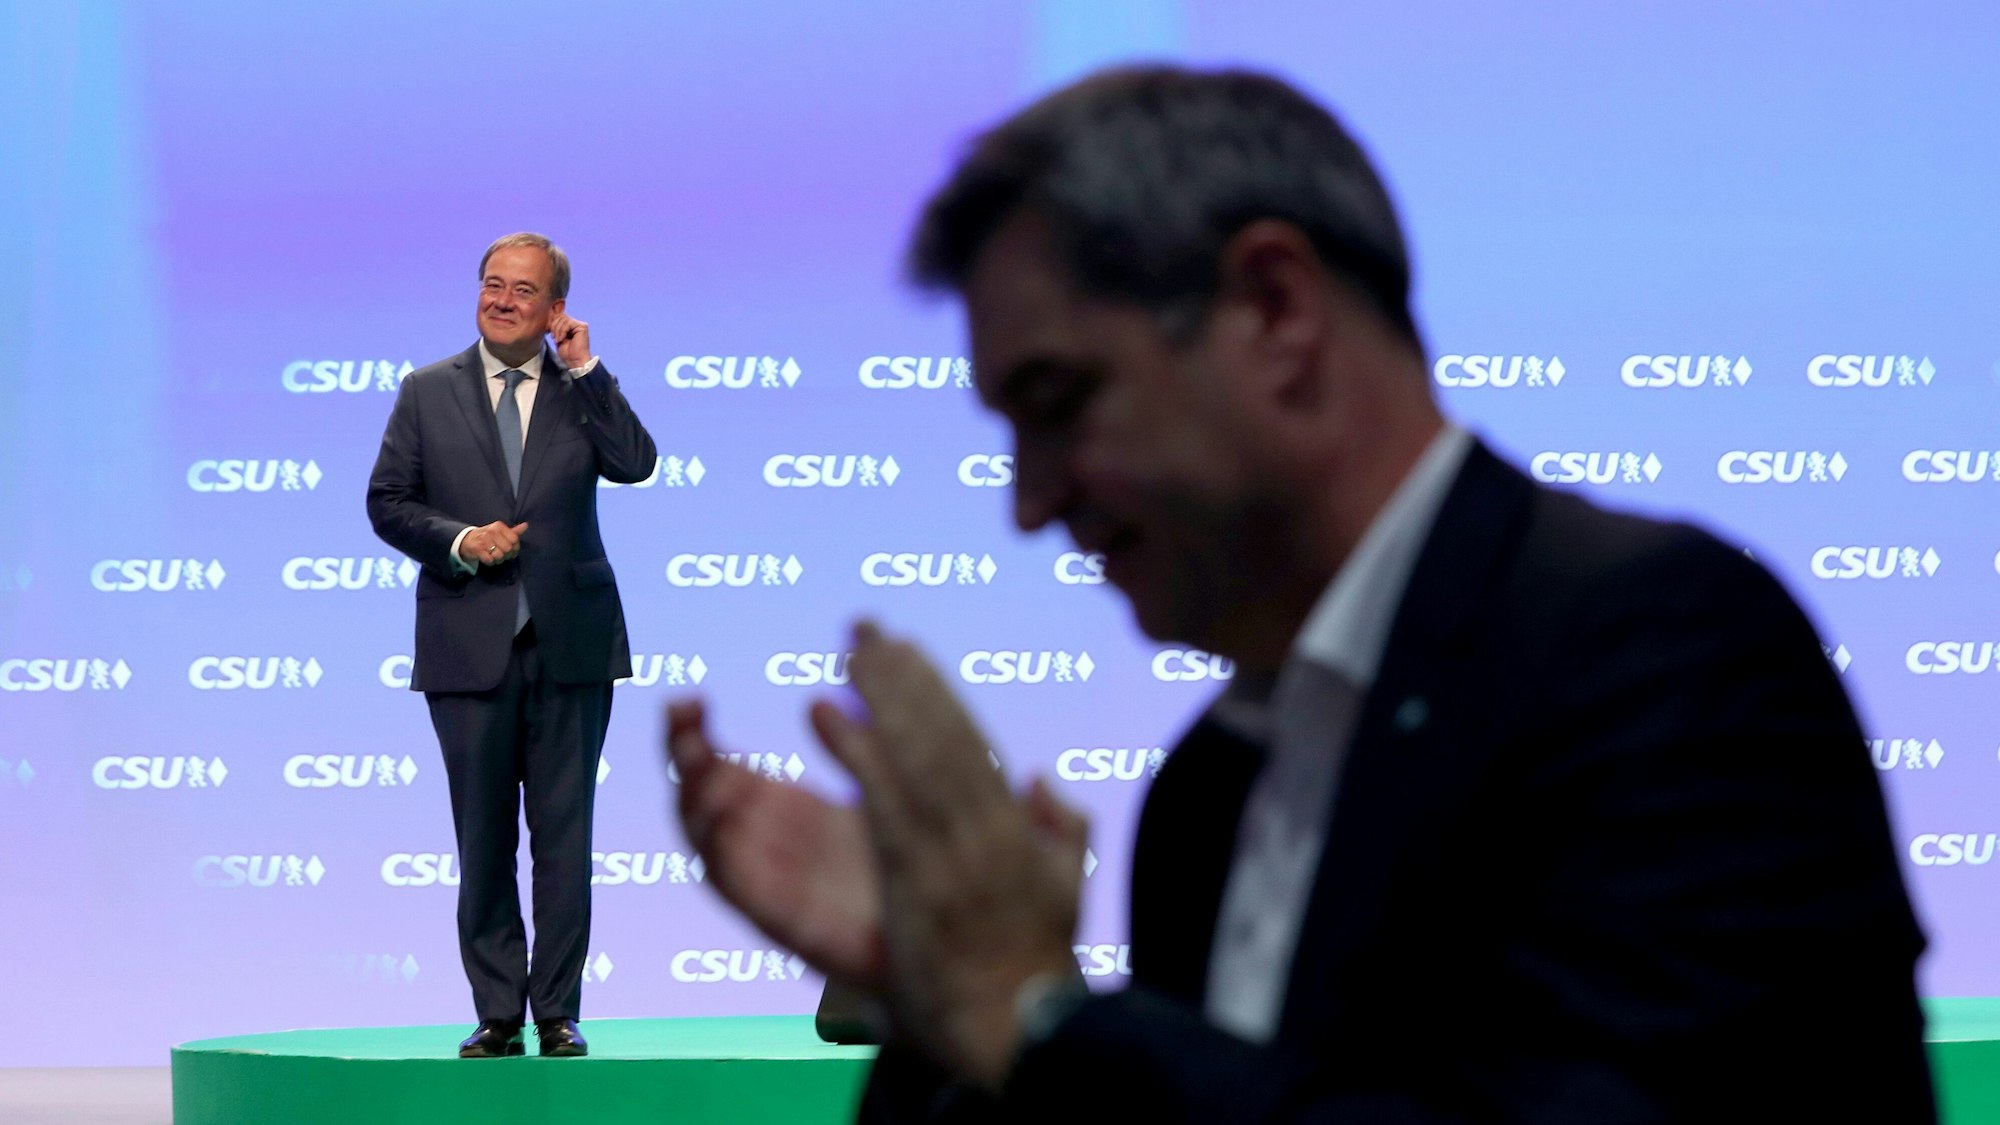 Die Delegierten jubeln und johlen Armin Laschet auf dem CSU-Parteitag am Samstag (11. September) zu, auch Markus Söder (vorne rechts) klatscht sehr überschwänglich.